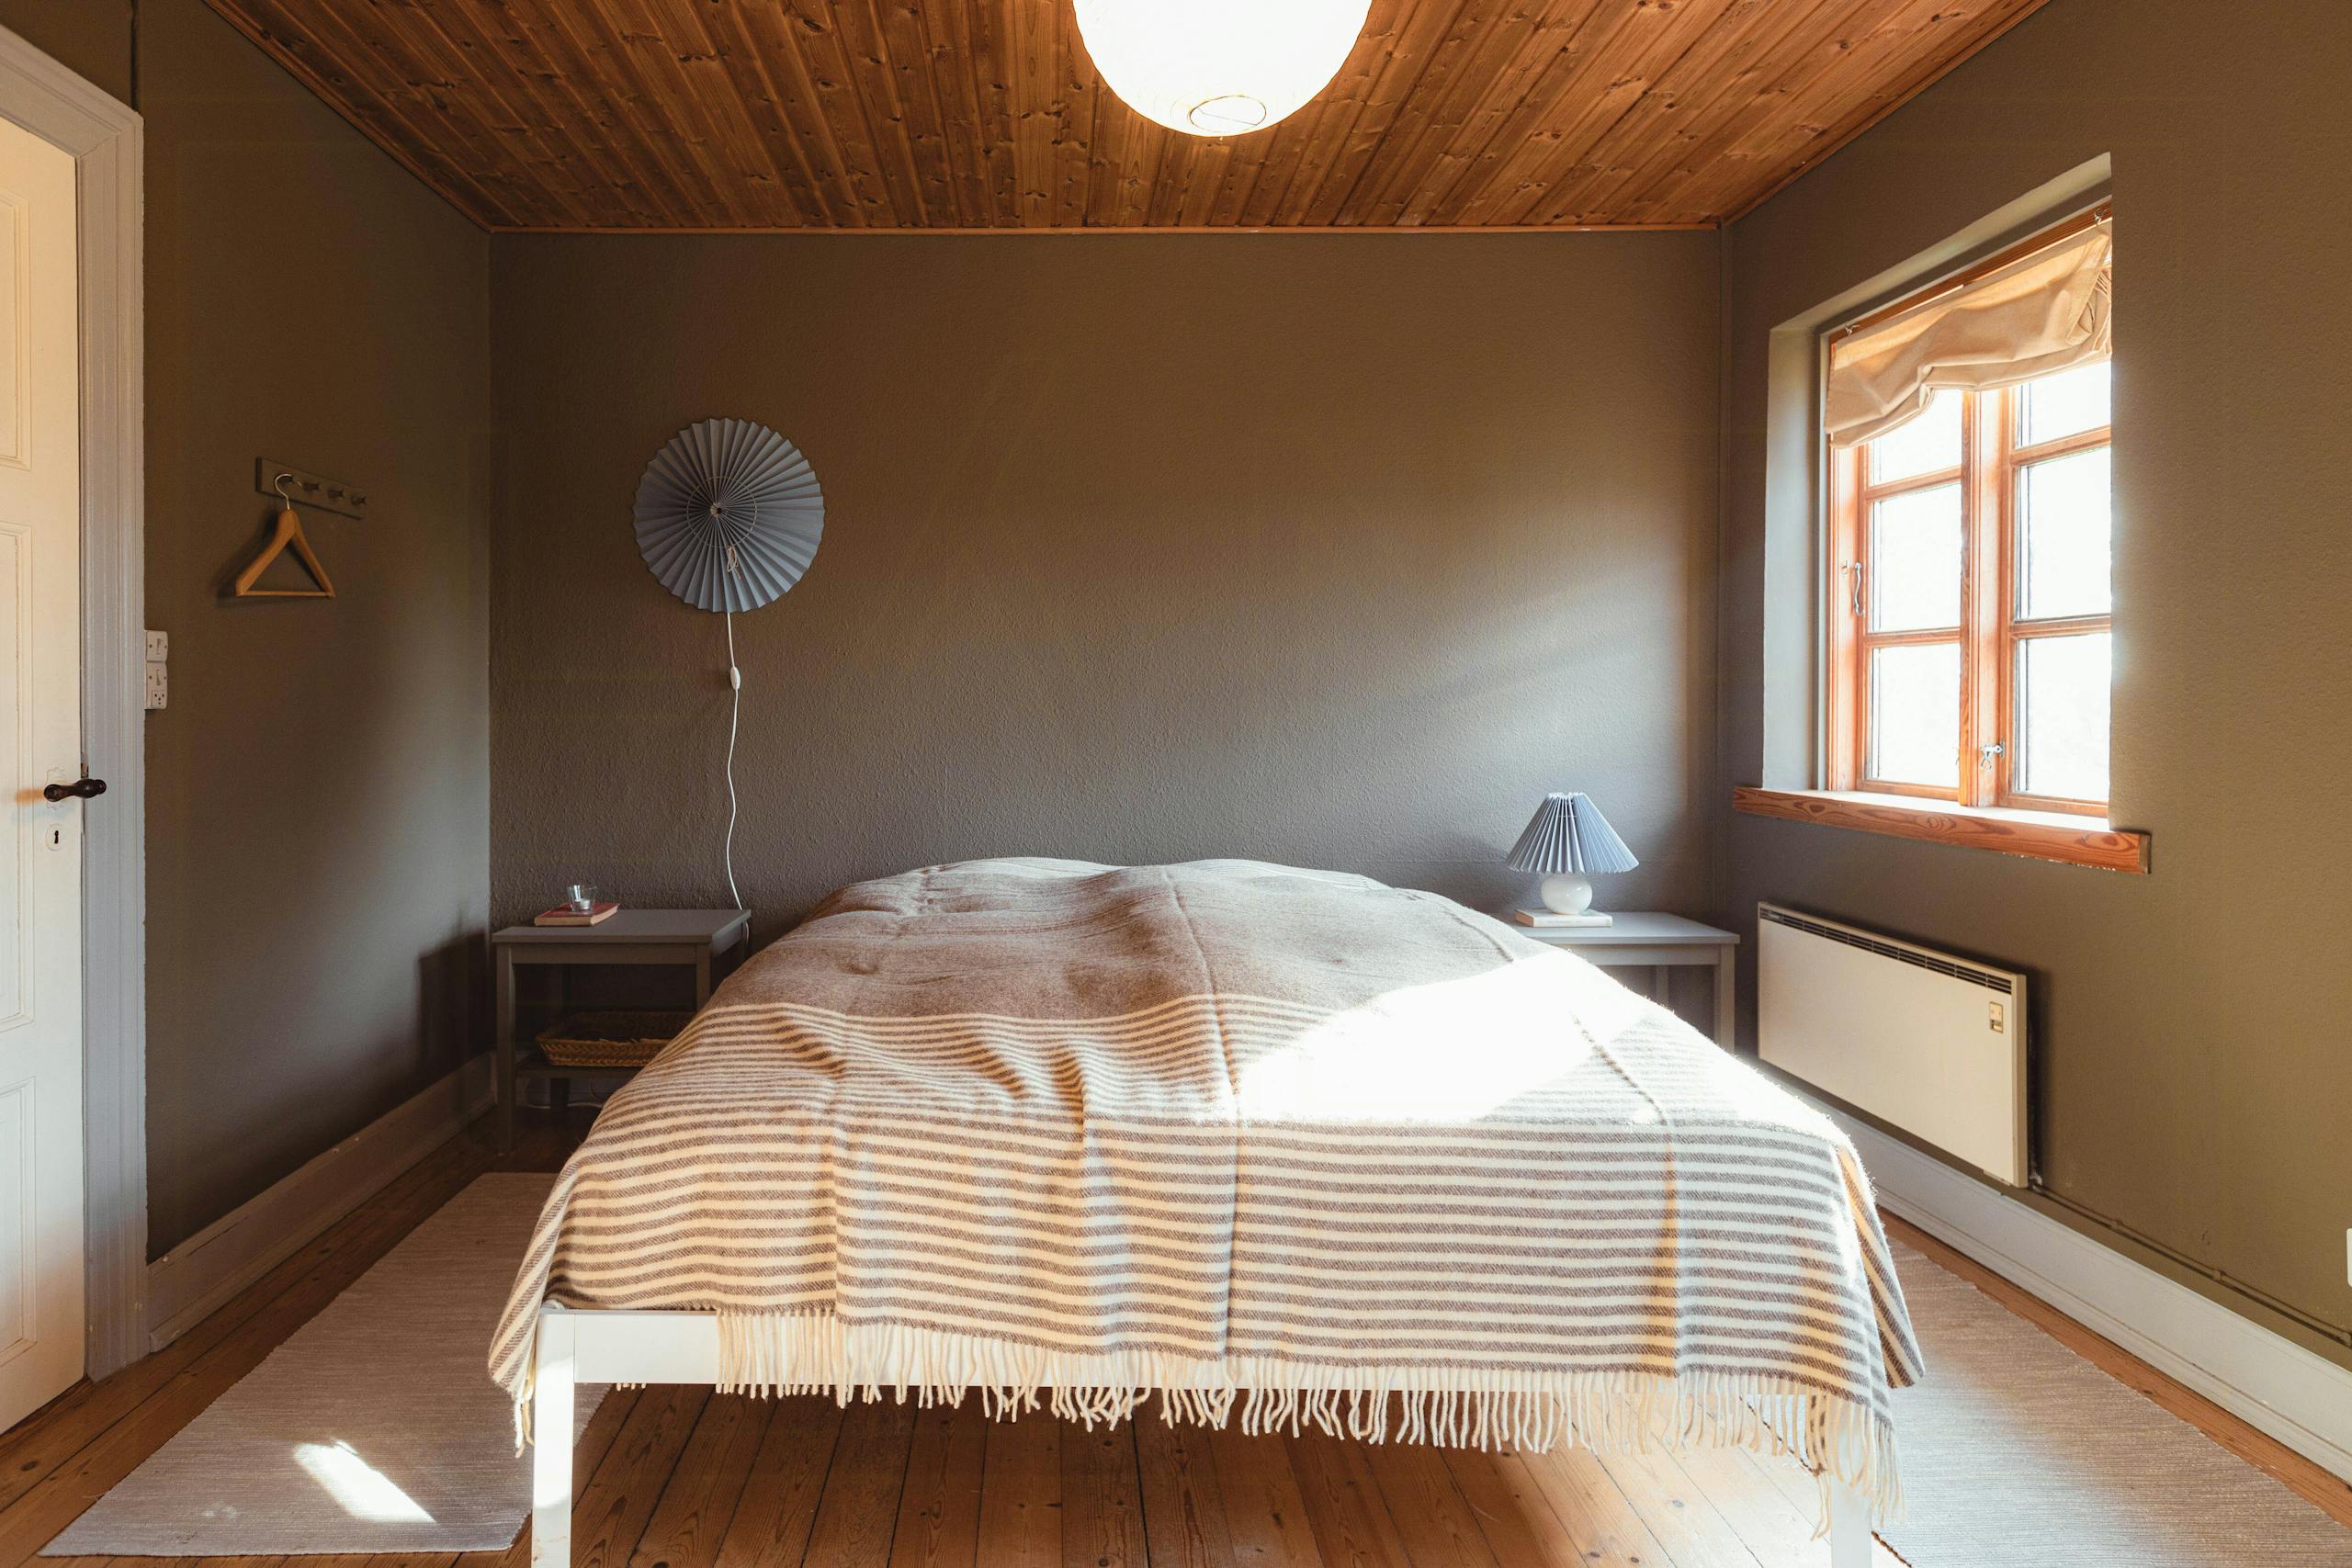 So verwandelst Du in 7 einfachen Schritten das Schlafzimmer Deines Ferienhauses in einen stilvollen Raum mit einer ruhigen Atmosphäre